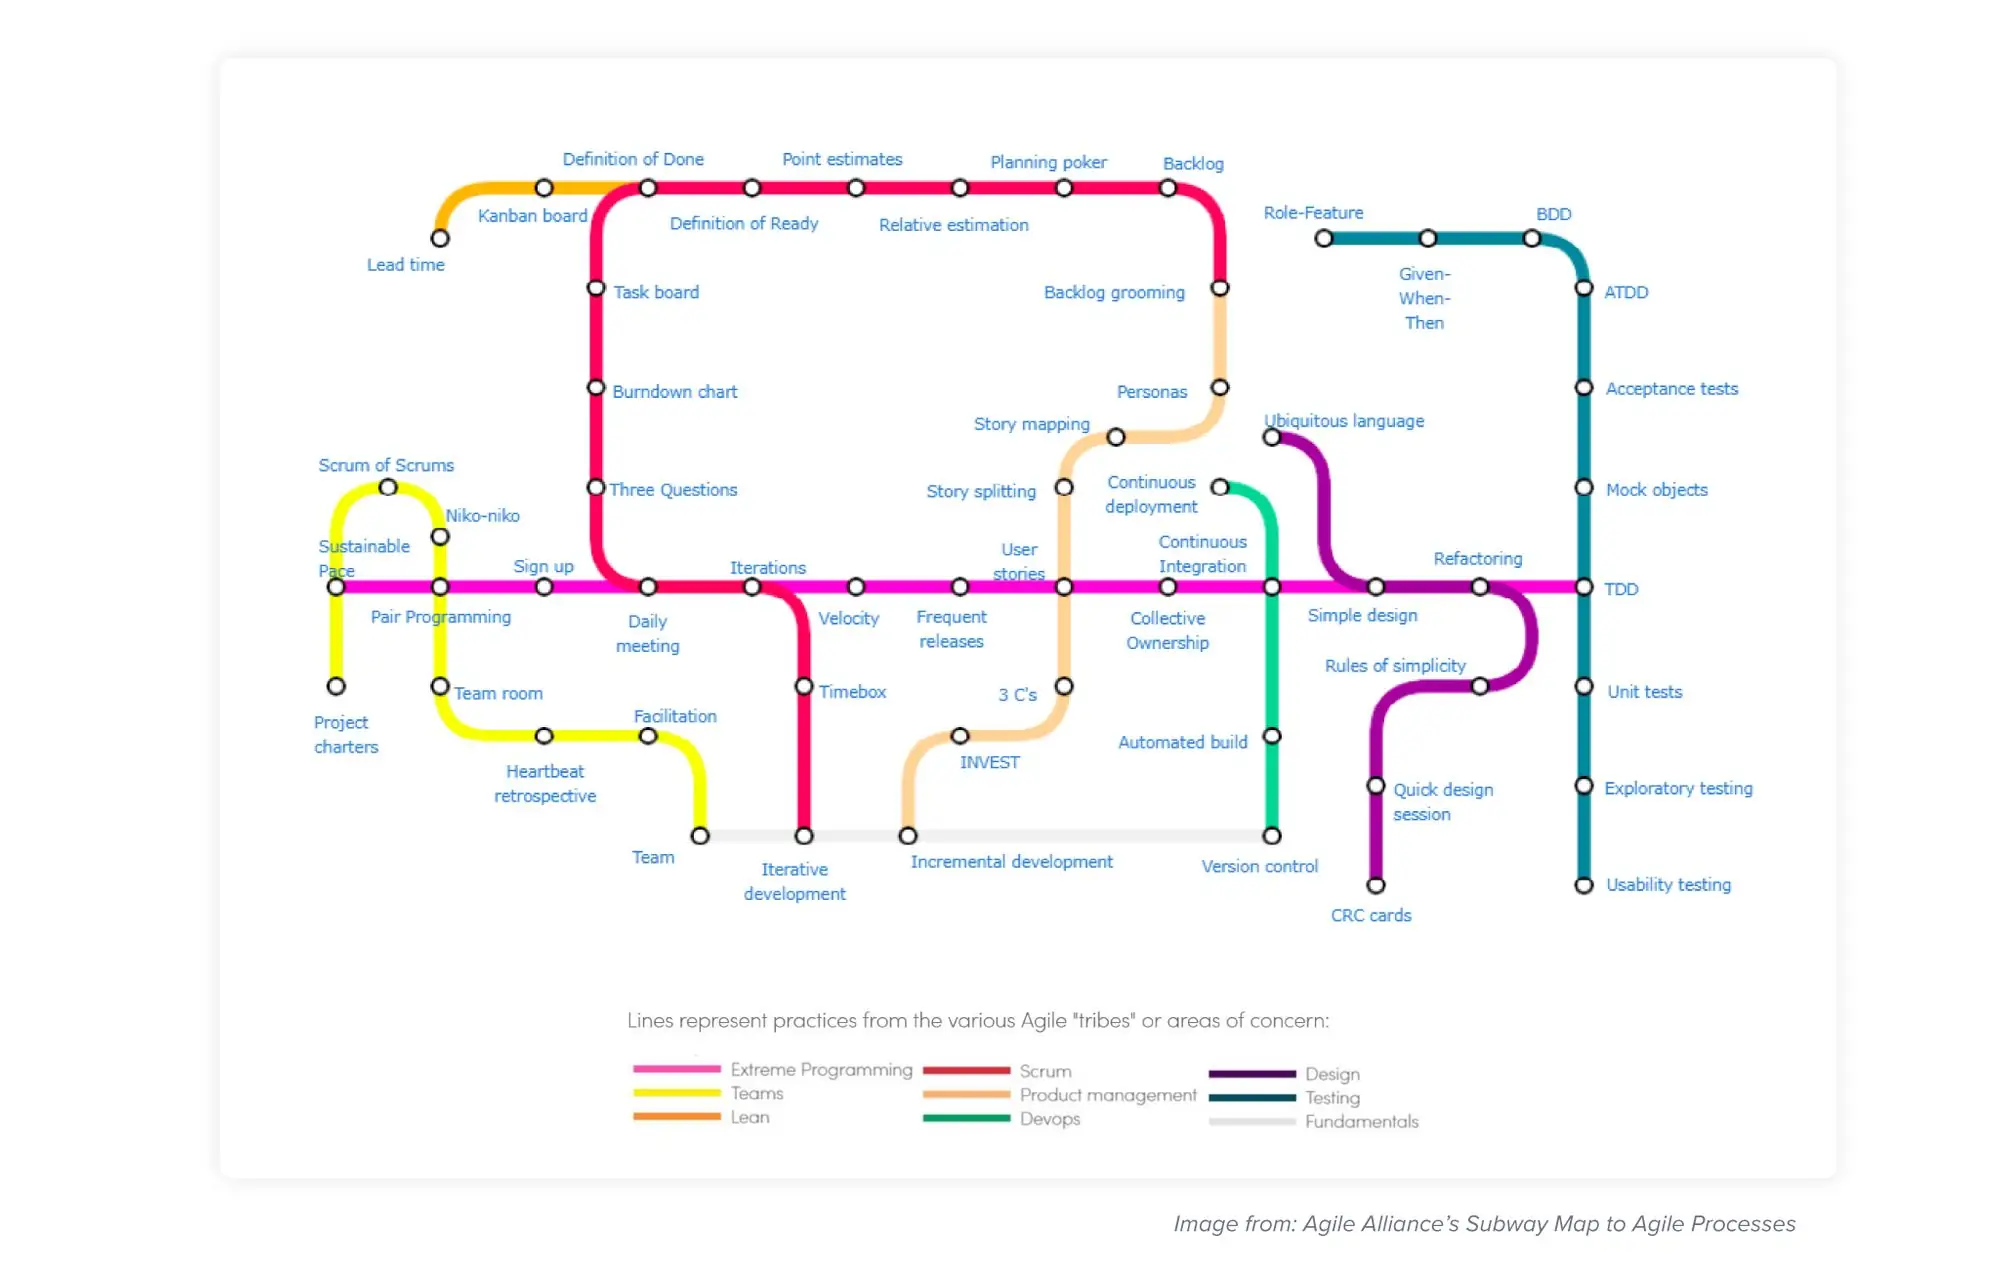 Agile Alliance's Subway Map to Agile Processes